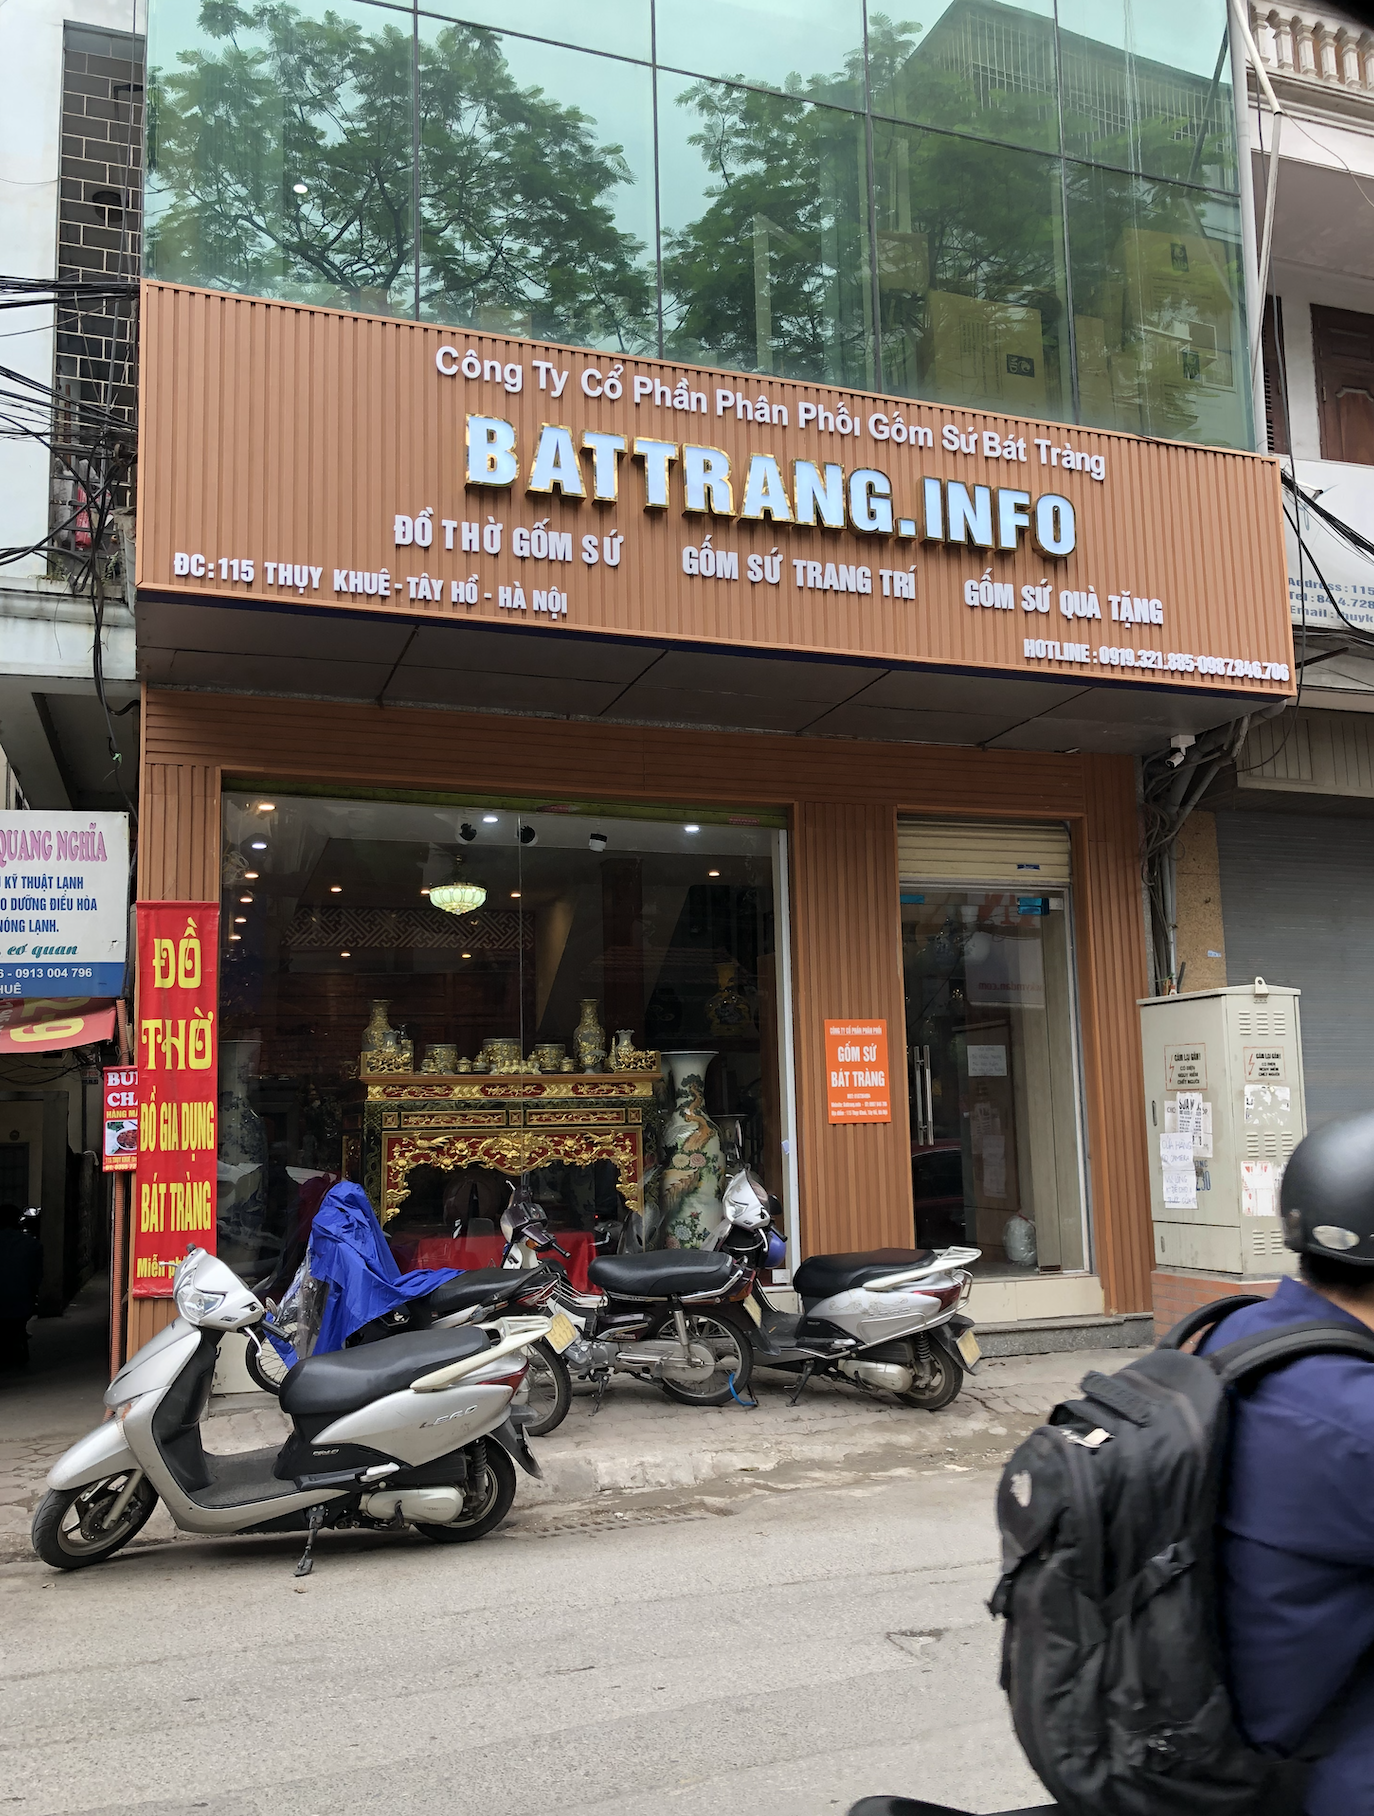 Cửa hàng bán gốm sứ Battrang.info số 115 Thụy Khuê